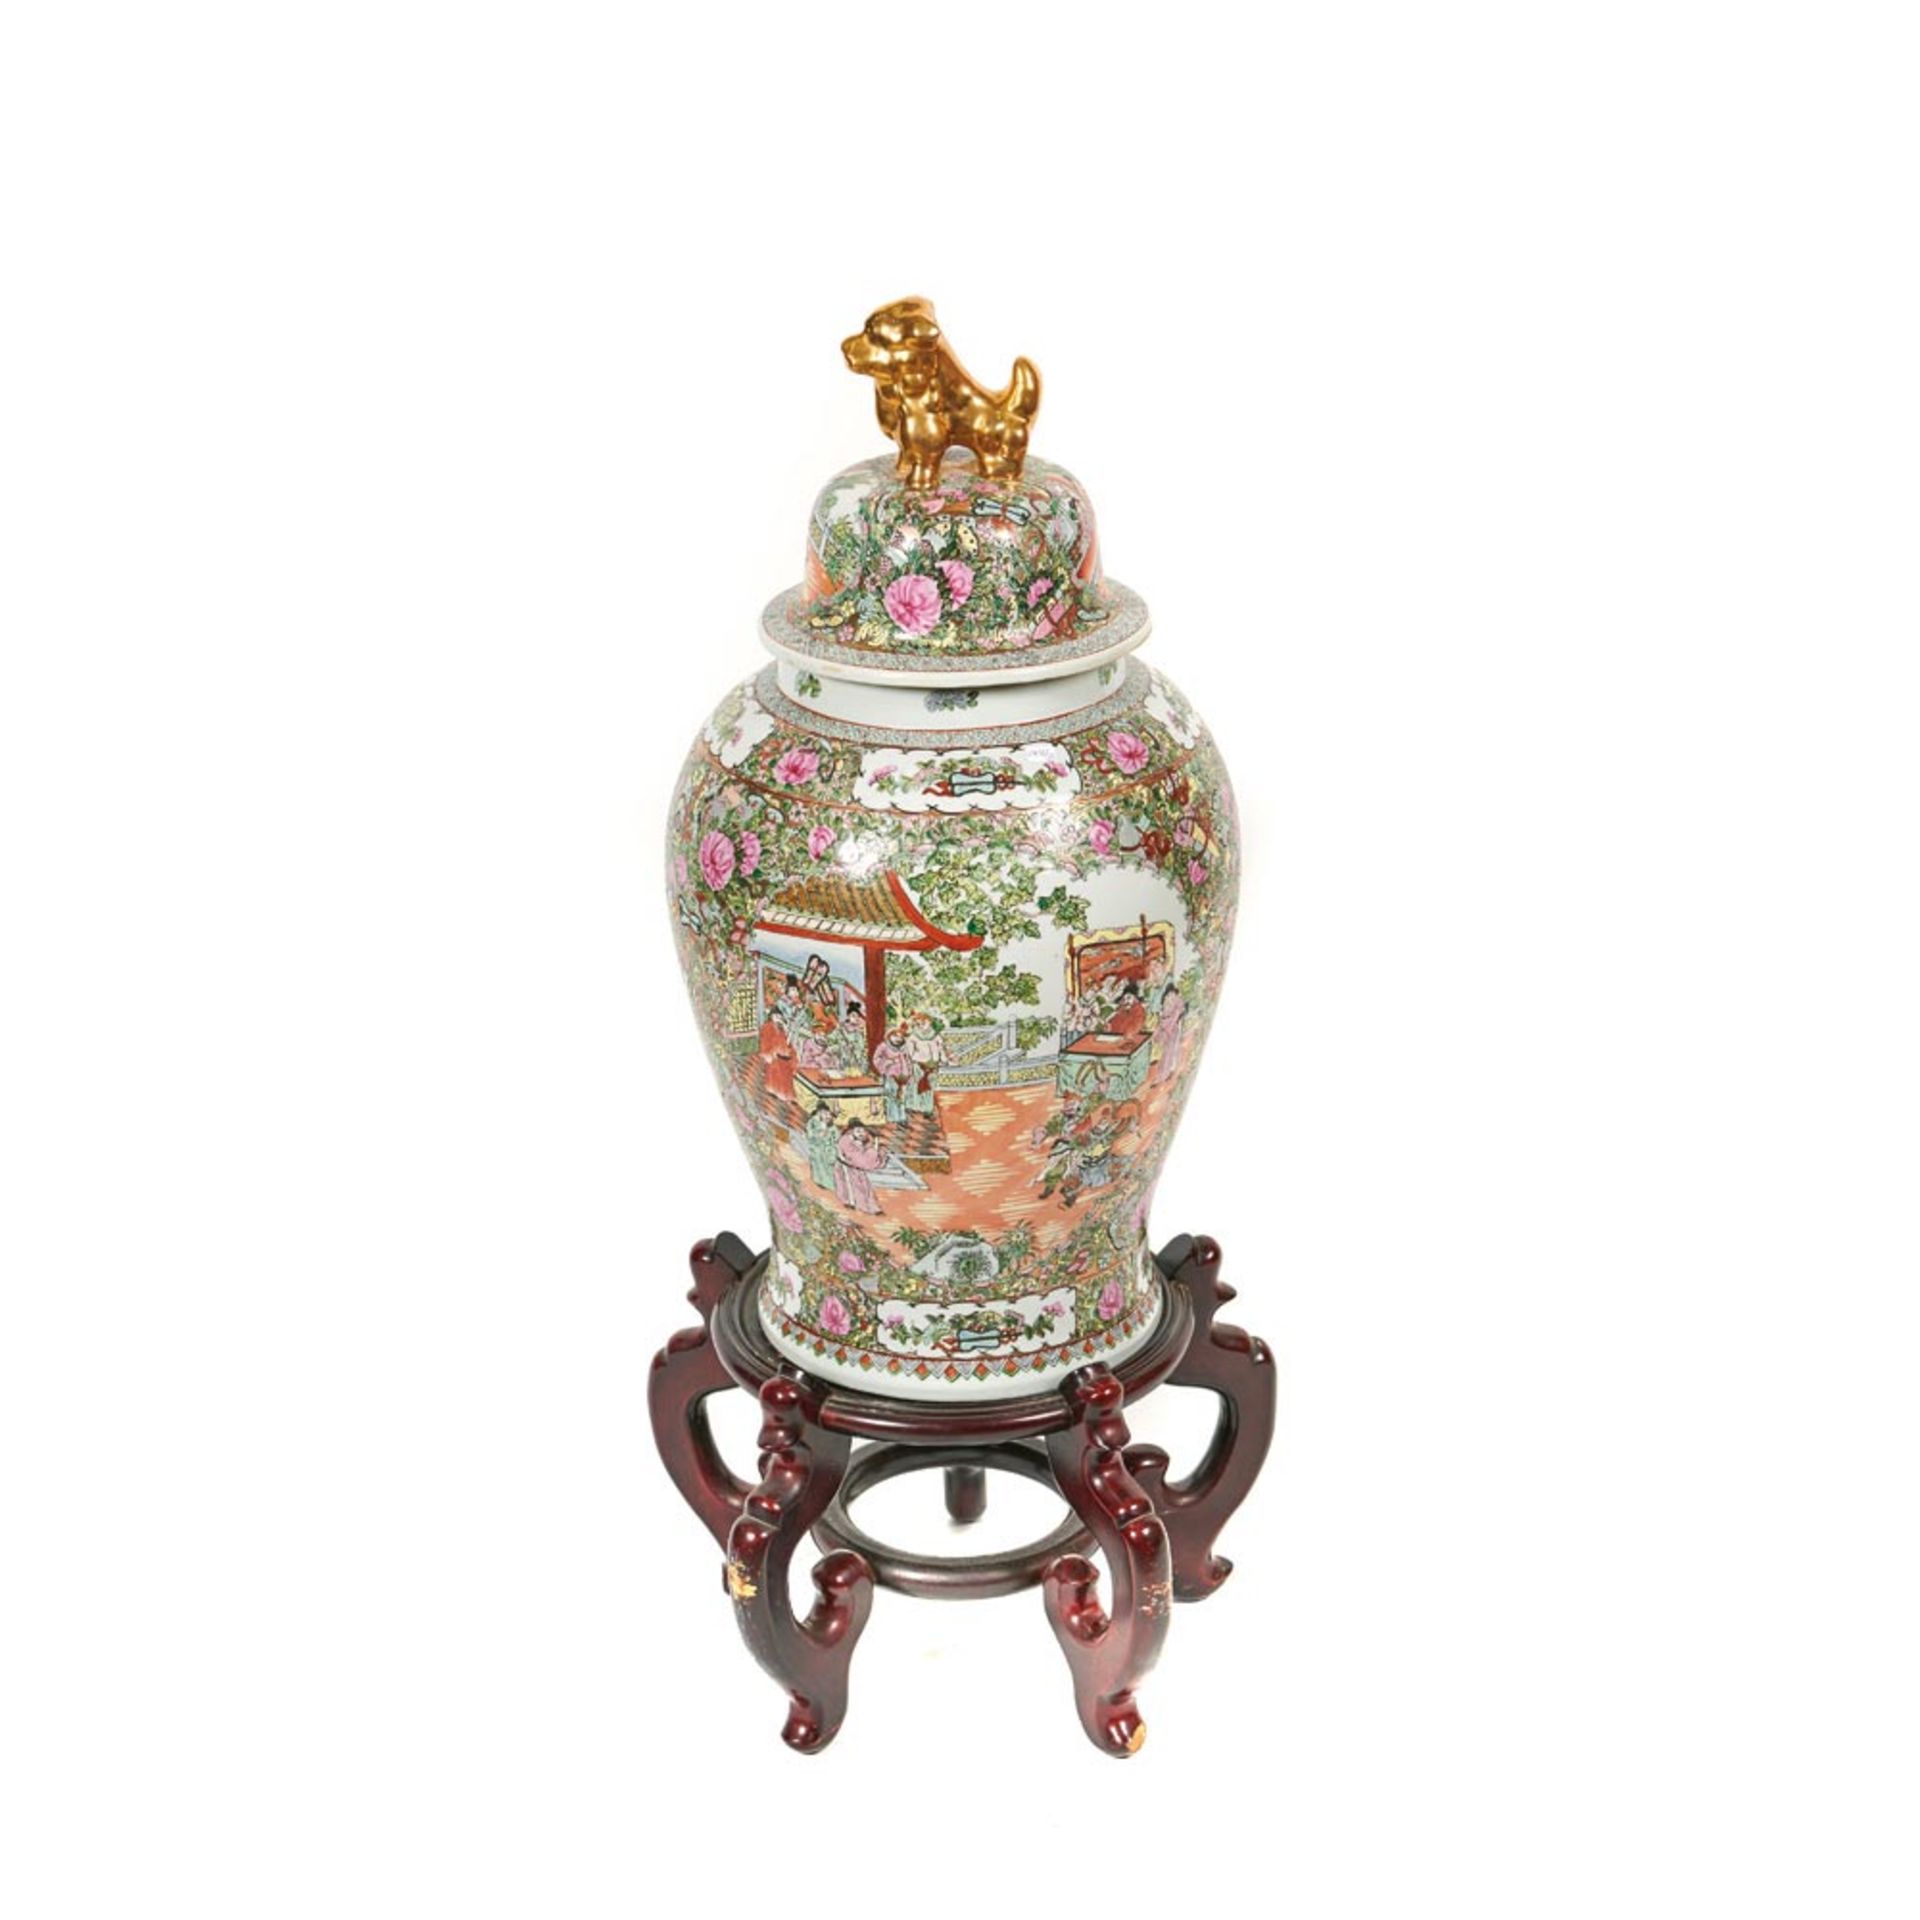 Tibor en porcelana china de Cantón con decoración de escenas cortesanas y motivos florales, mediados